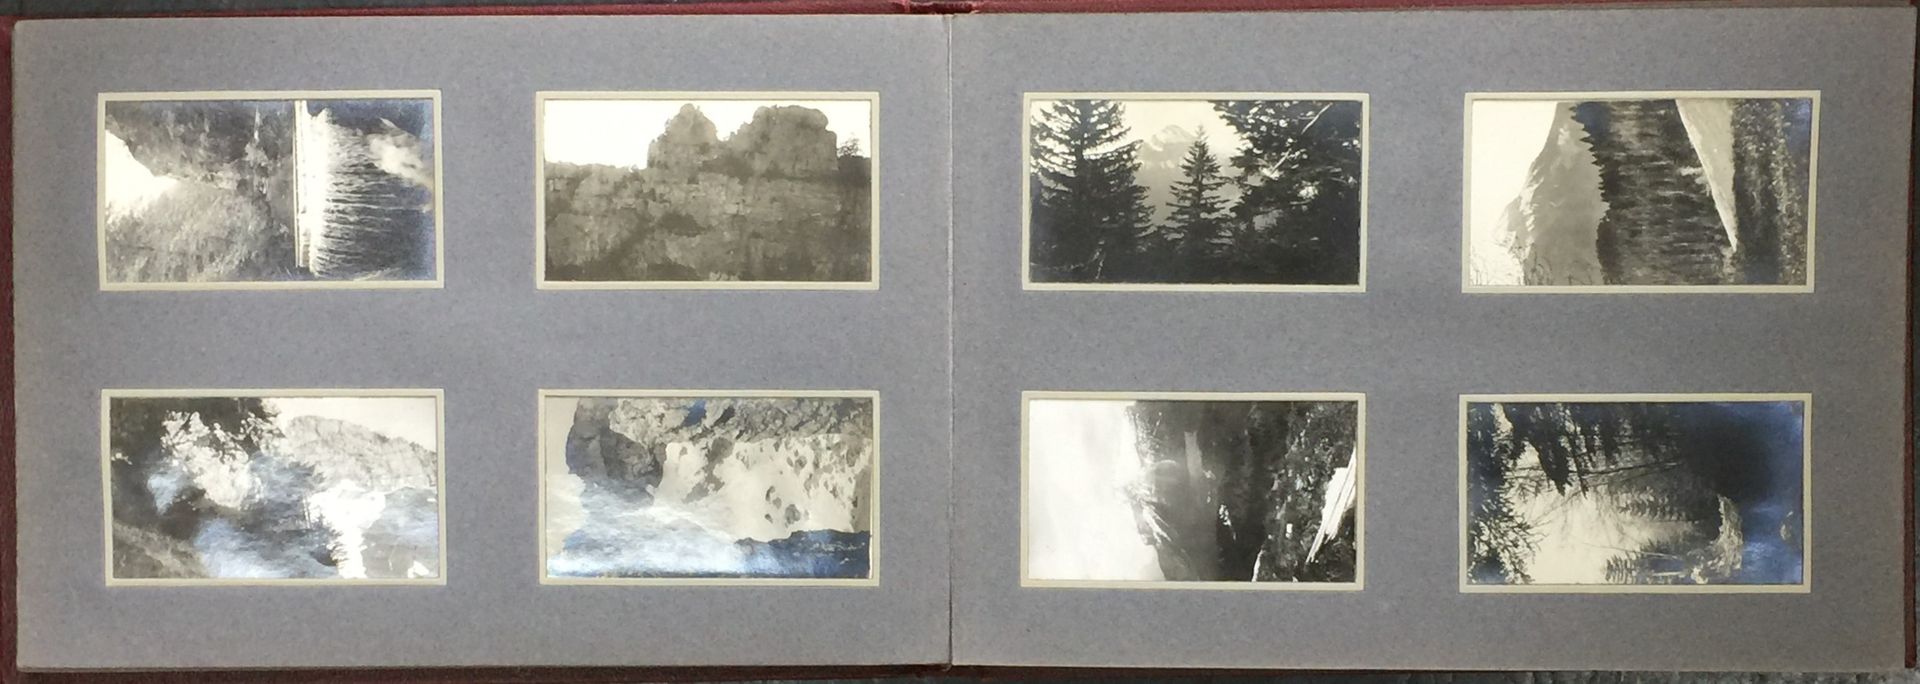 Null Álbum de fotografías de aficionados sobre el tema de la montaña